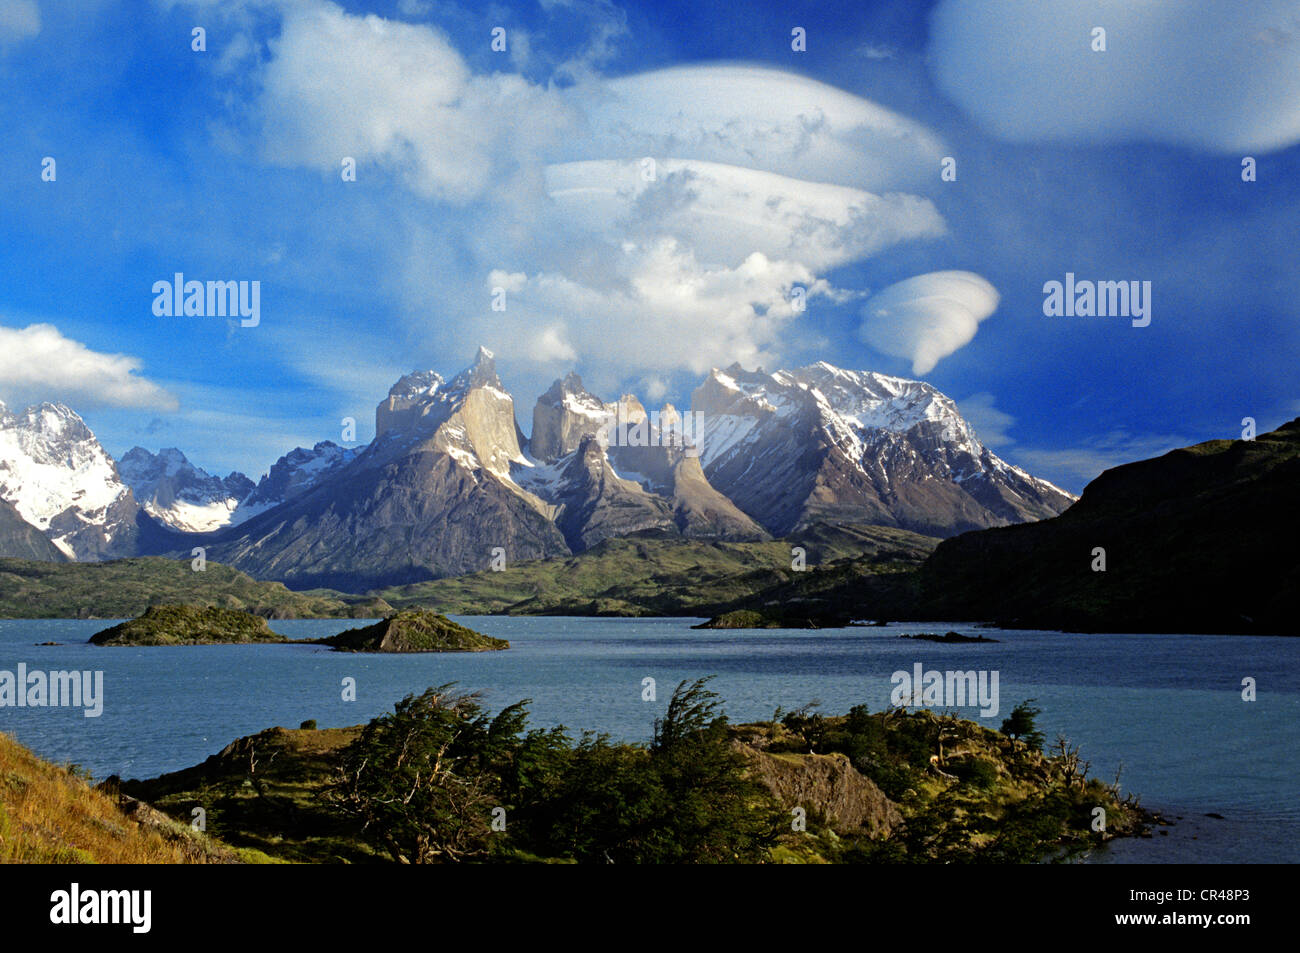 Il Cile, Magallanes e Antartica Chilena Regione, Ultima Esperanza Provincia, parco nazionale Torres del Paine, lago Pehoe e il Foto Stock